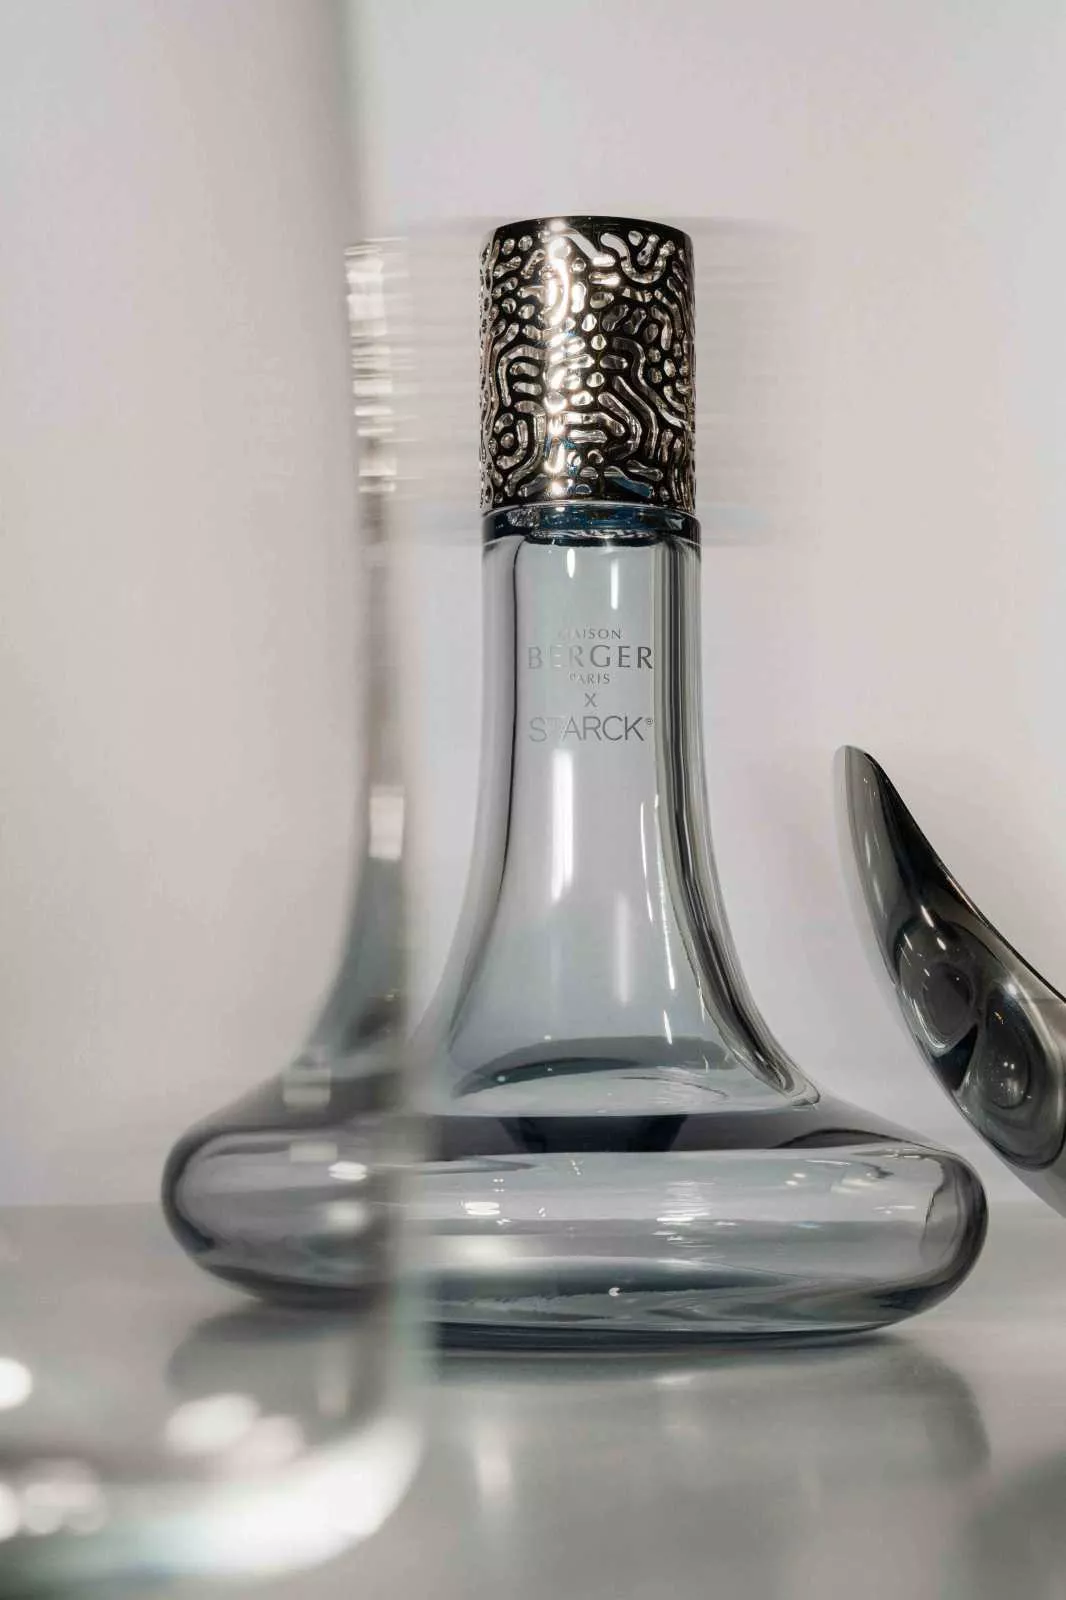 Набор: лампа, обьем 0,46 л и наполнитель Starck, обьем 0,5 л  Maison Berger Paris Grey Maison Berger (4740) - Фото nav 5